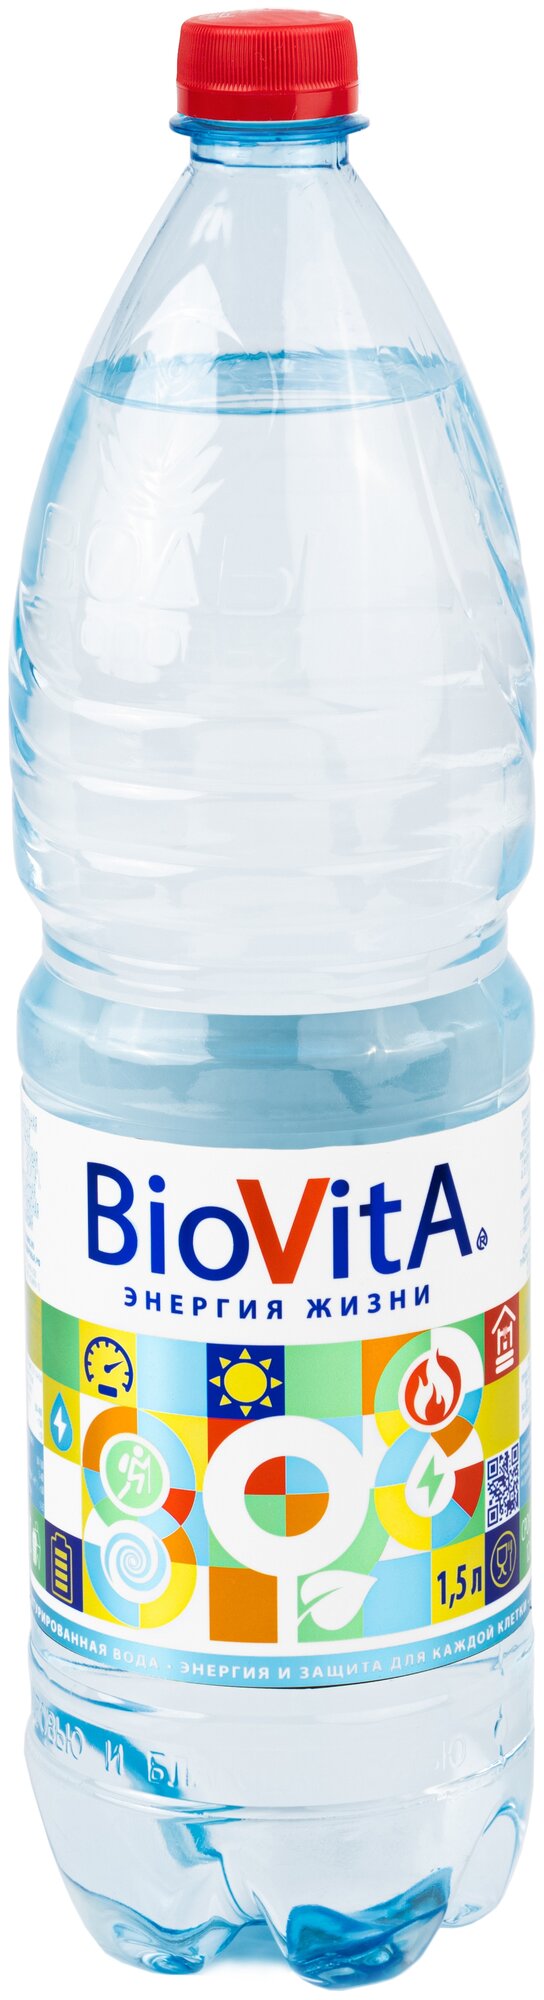 Вода минеральная Biovita негазированная ПЭТ